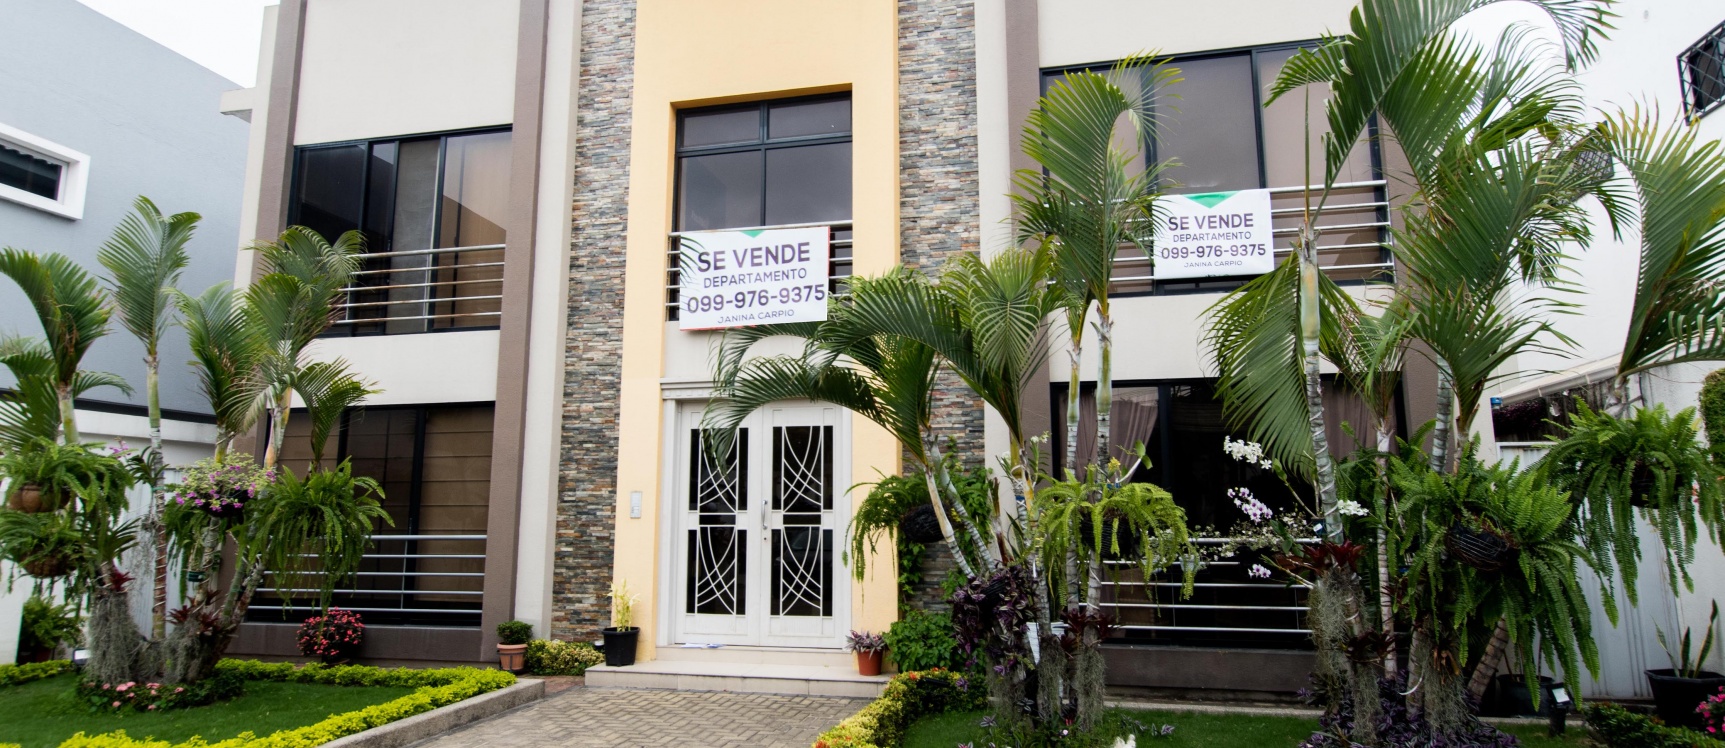 GeoBienes - Departamento en venta, Urb. El Condado de Vicolinci, Cond. Sonia Maria II - Plusvalia Guayaquil Casas de venta y alquiler Inmobiliaria Ecuador